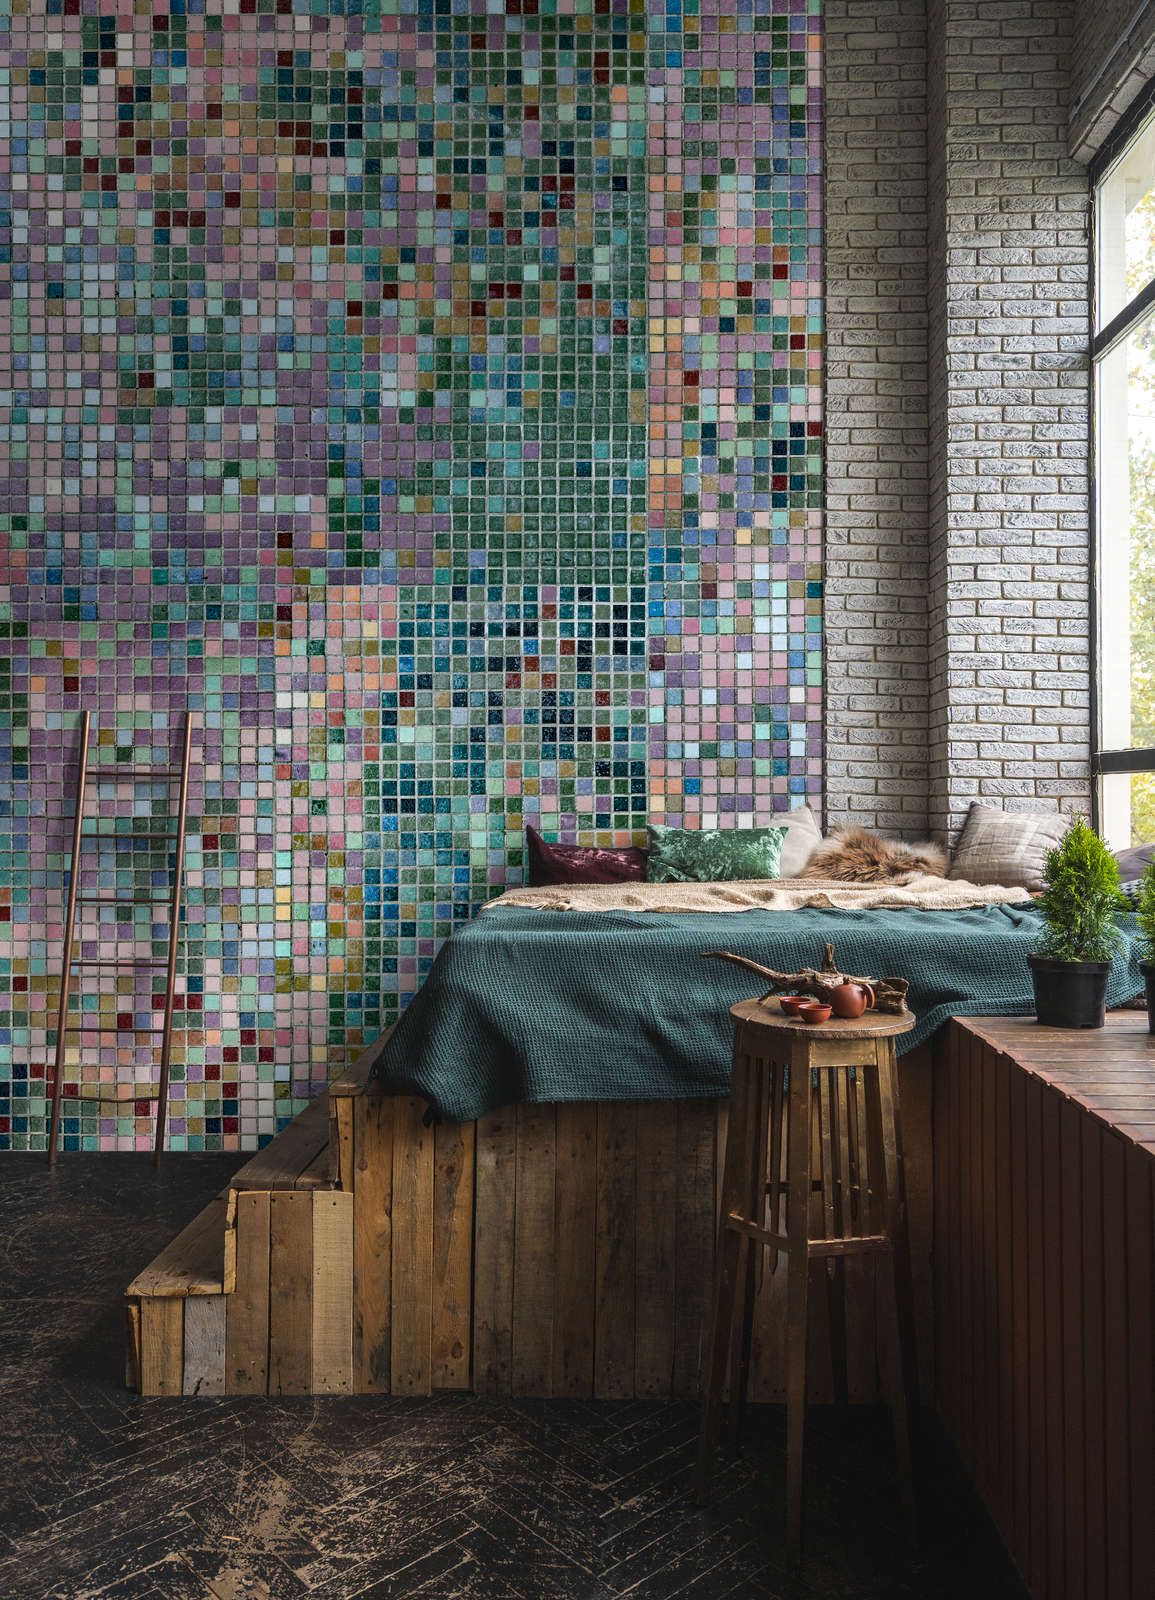             Fotomural »grand central« - Motivo de mosaico en colores vivos - Tela no tejida de alta calidad, lisa y ligeramente brillante
        